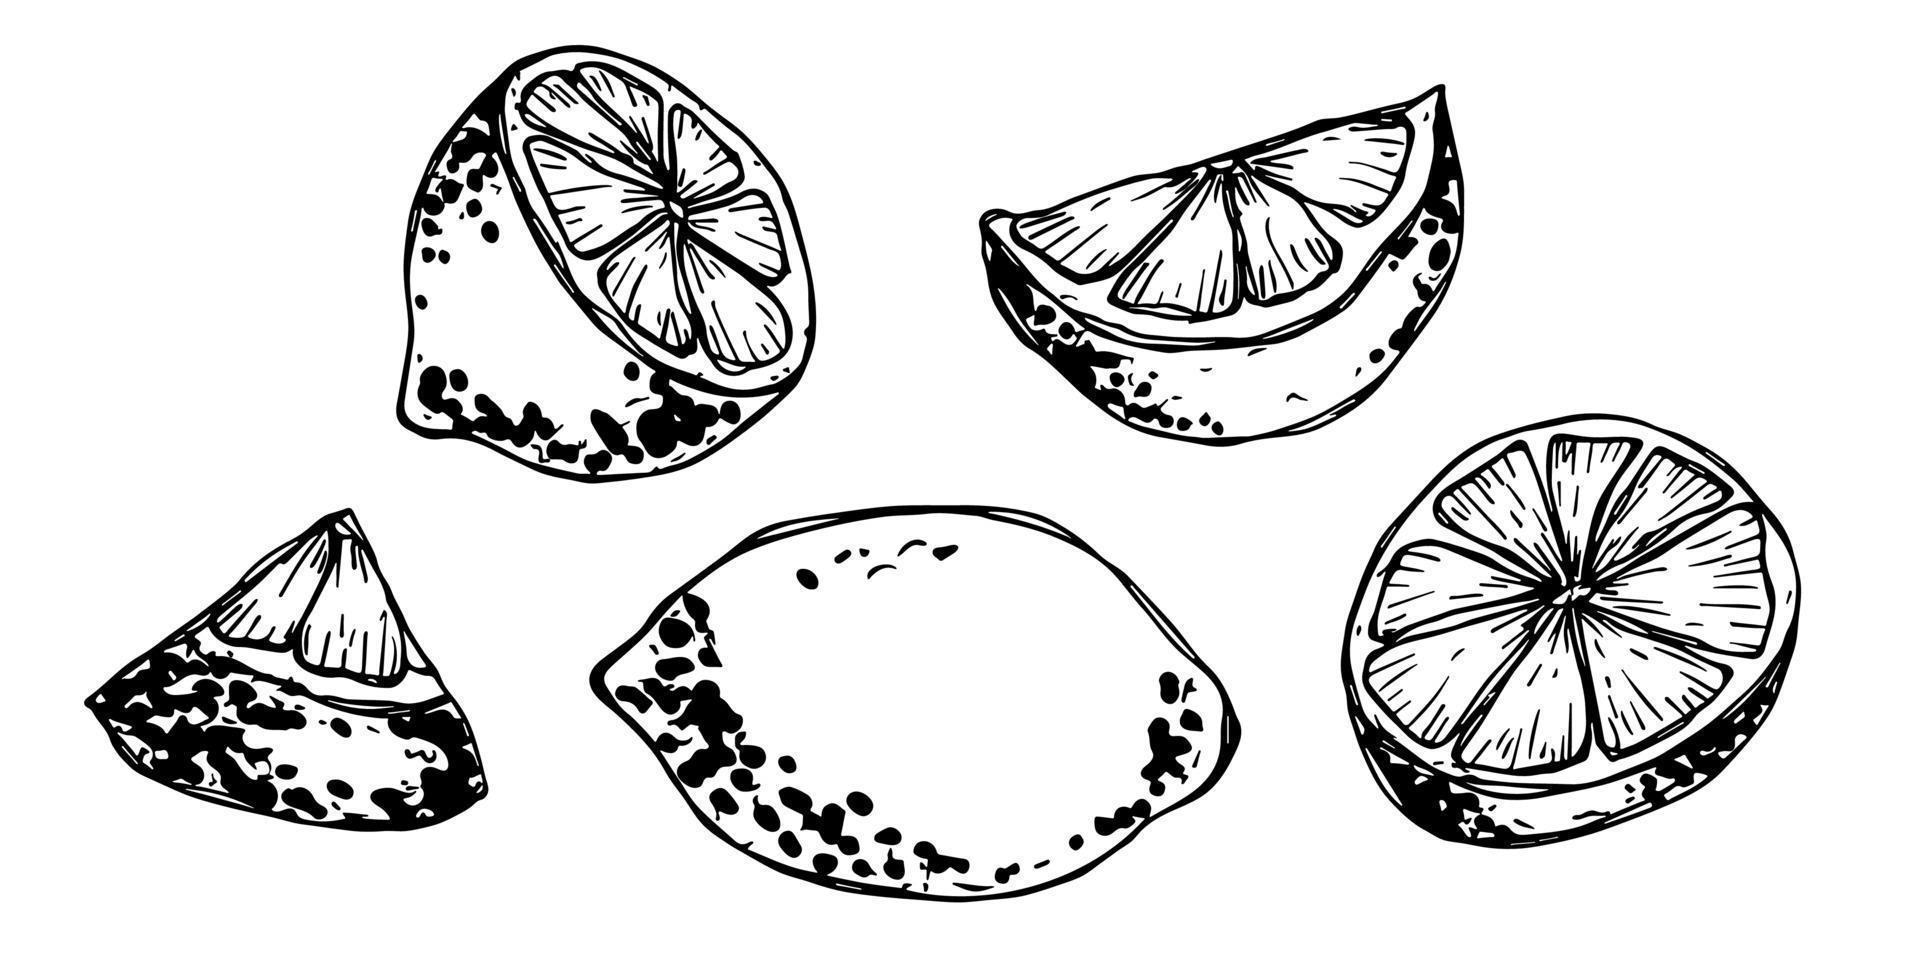 vektor citron- ClipArt. hand dragen citrus- uppsättning. frukt illustration. för skriva ut, webb, design, dekor